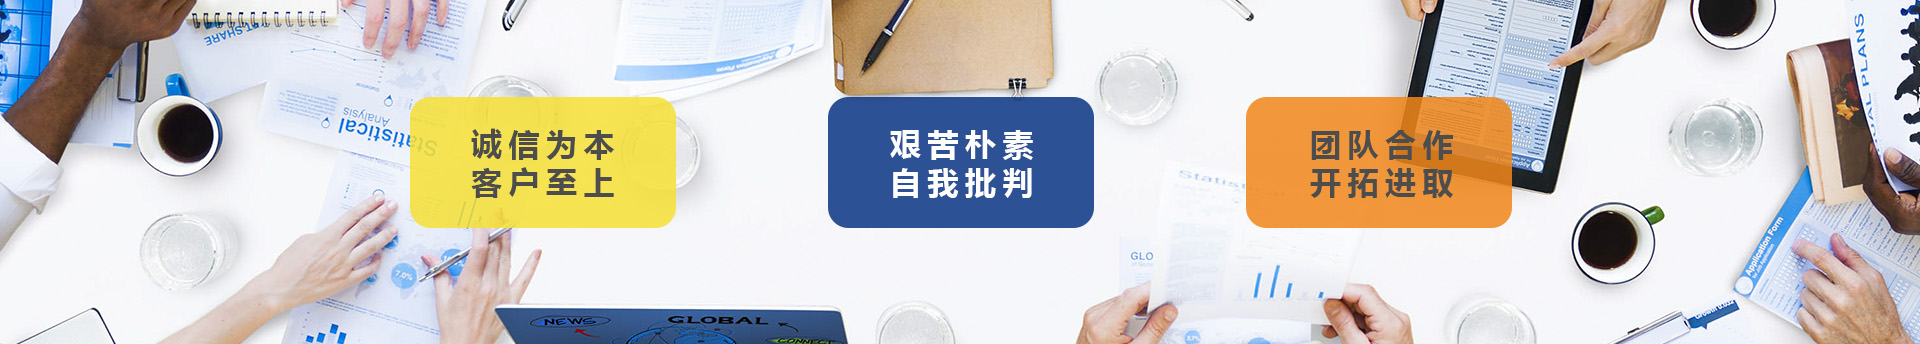 上海诗敏教学设备有限公司|学校家具-学生课桌椅-学生宿舍床-公寓床-阅览室桌椅